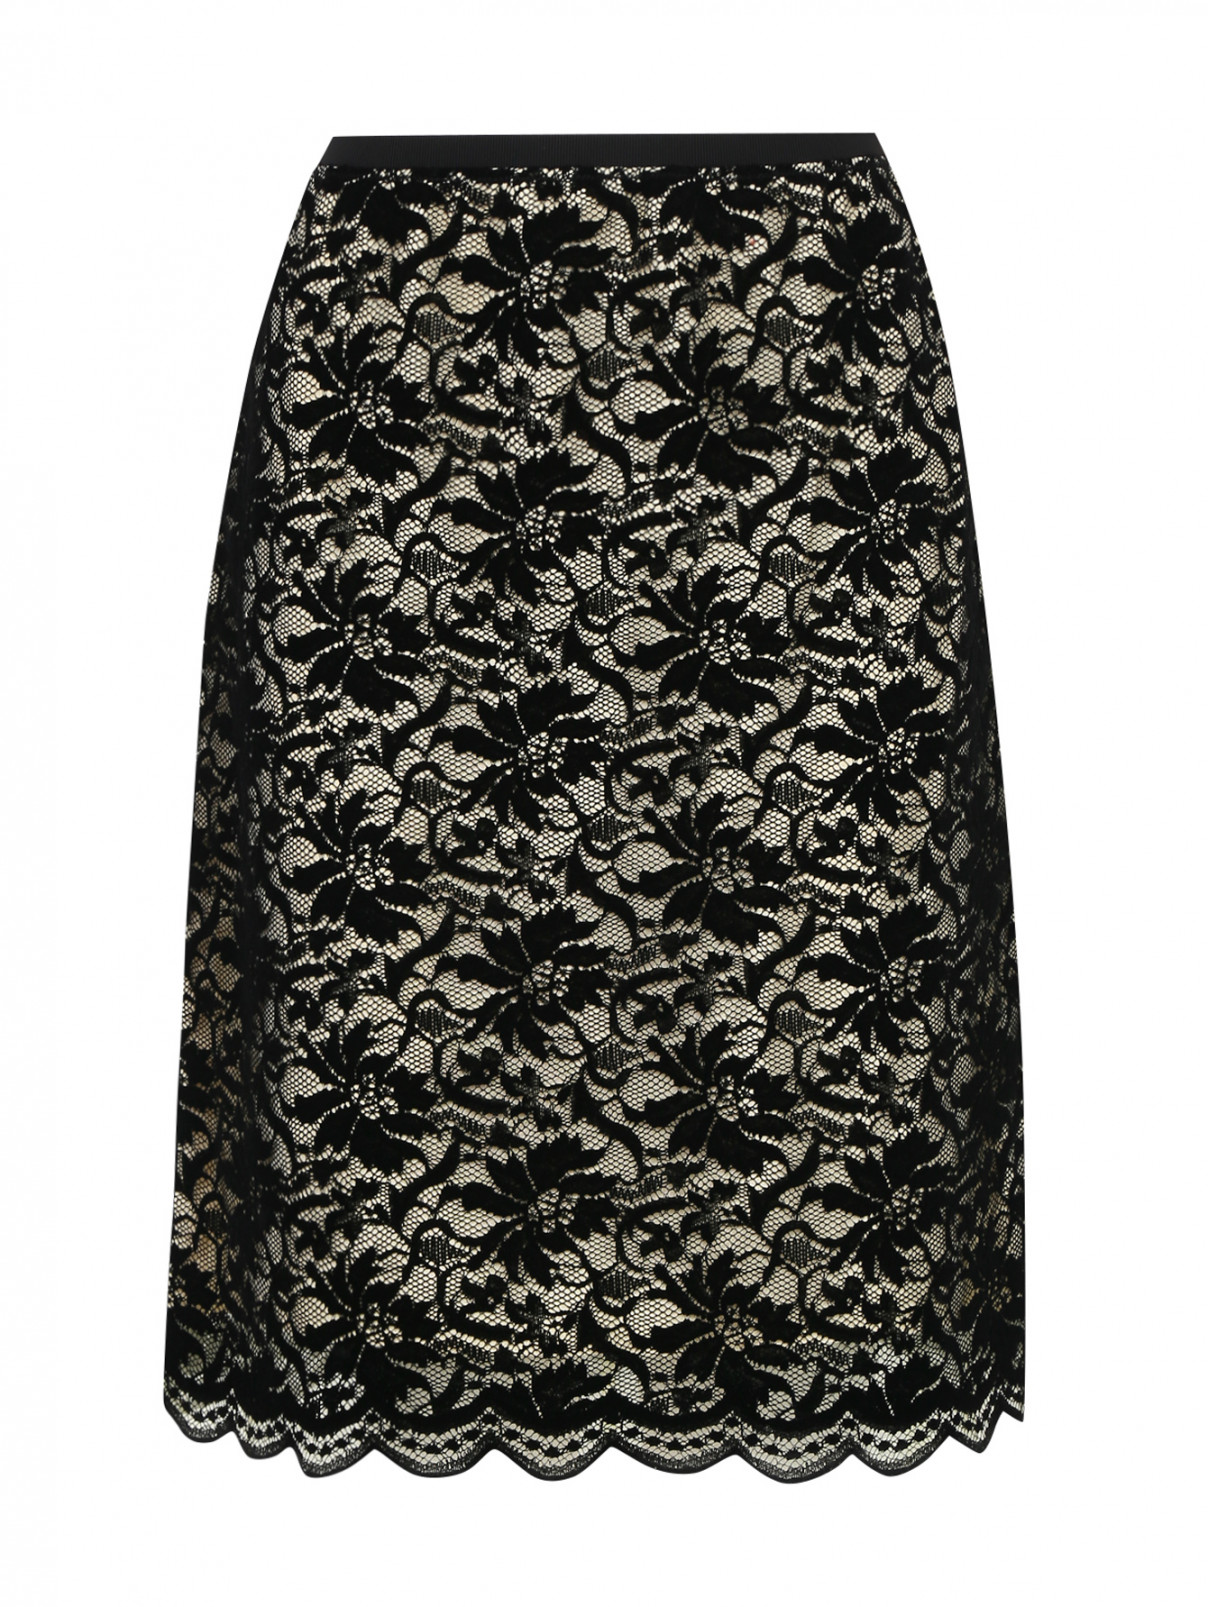 Кружевная юбка Marc Jacobs  –  Общий вид  – Цвет:  Черный